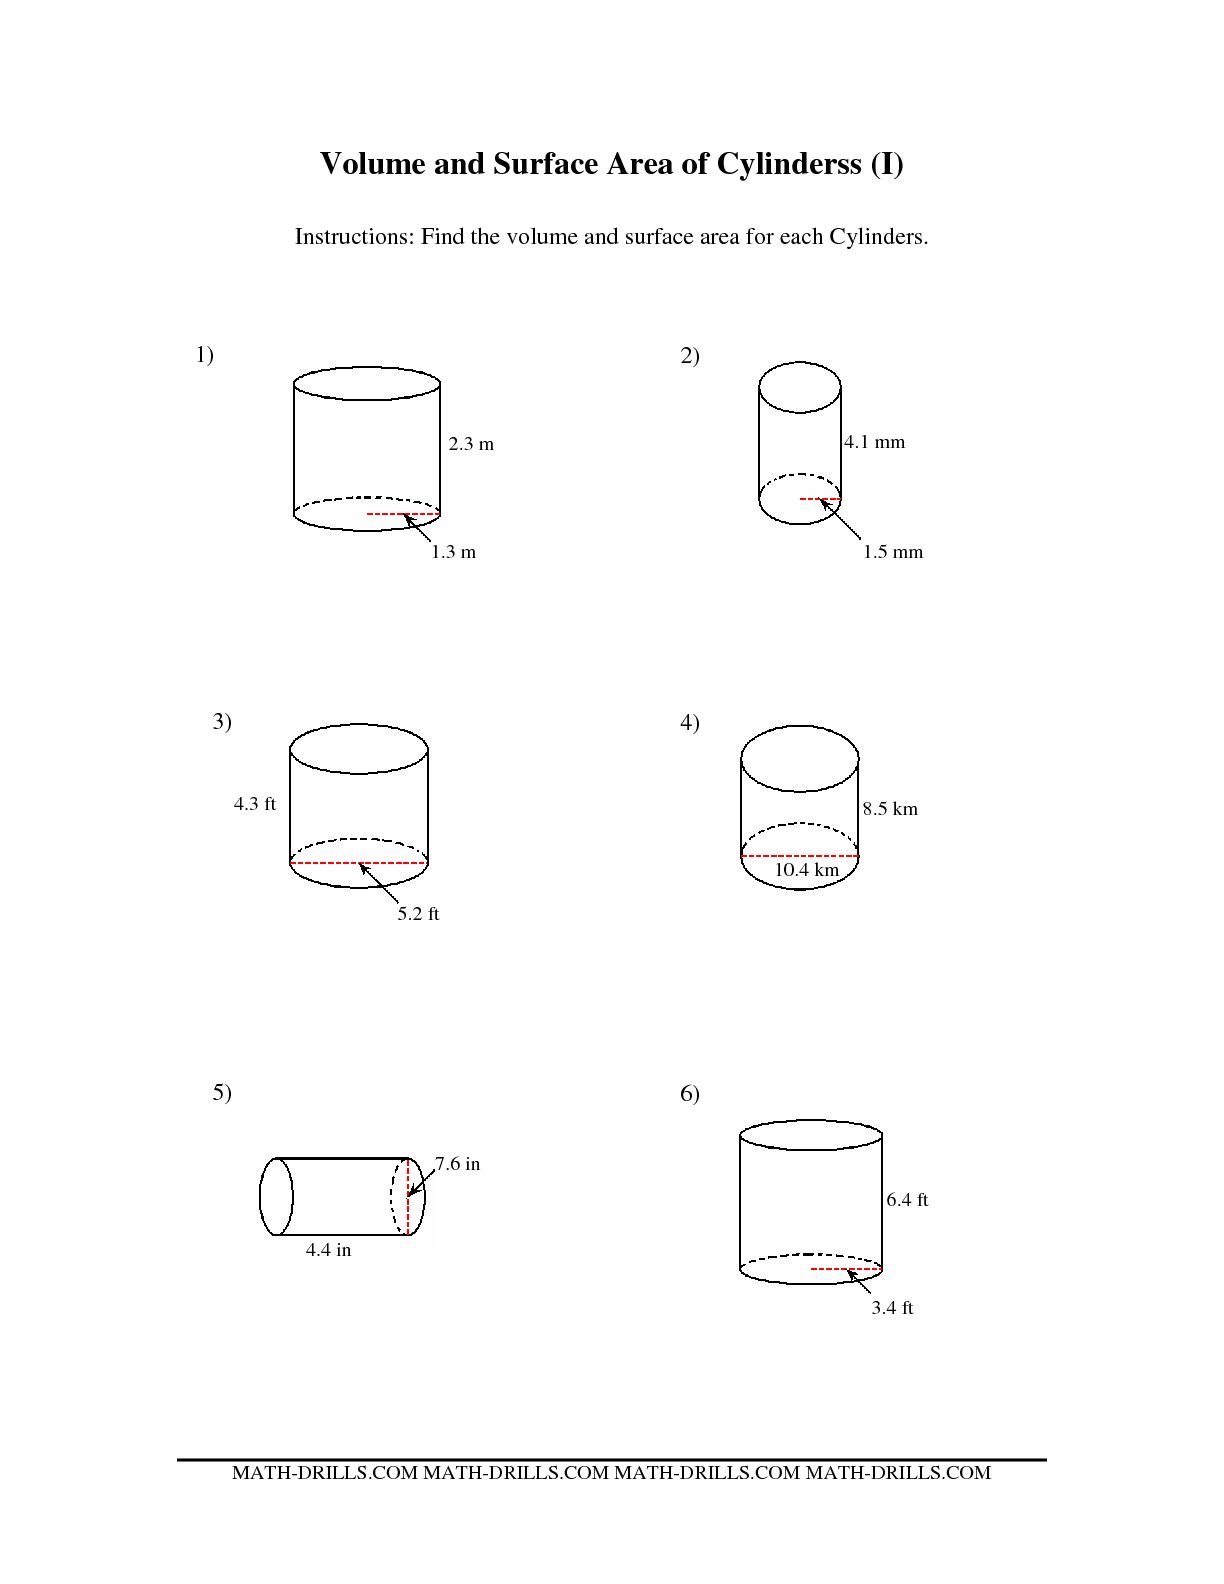 Surface Area Volume Cylinder Worksheet Image